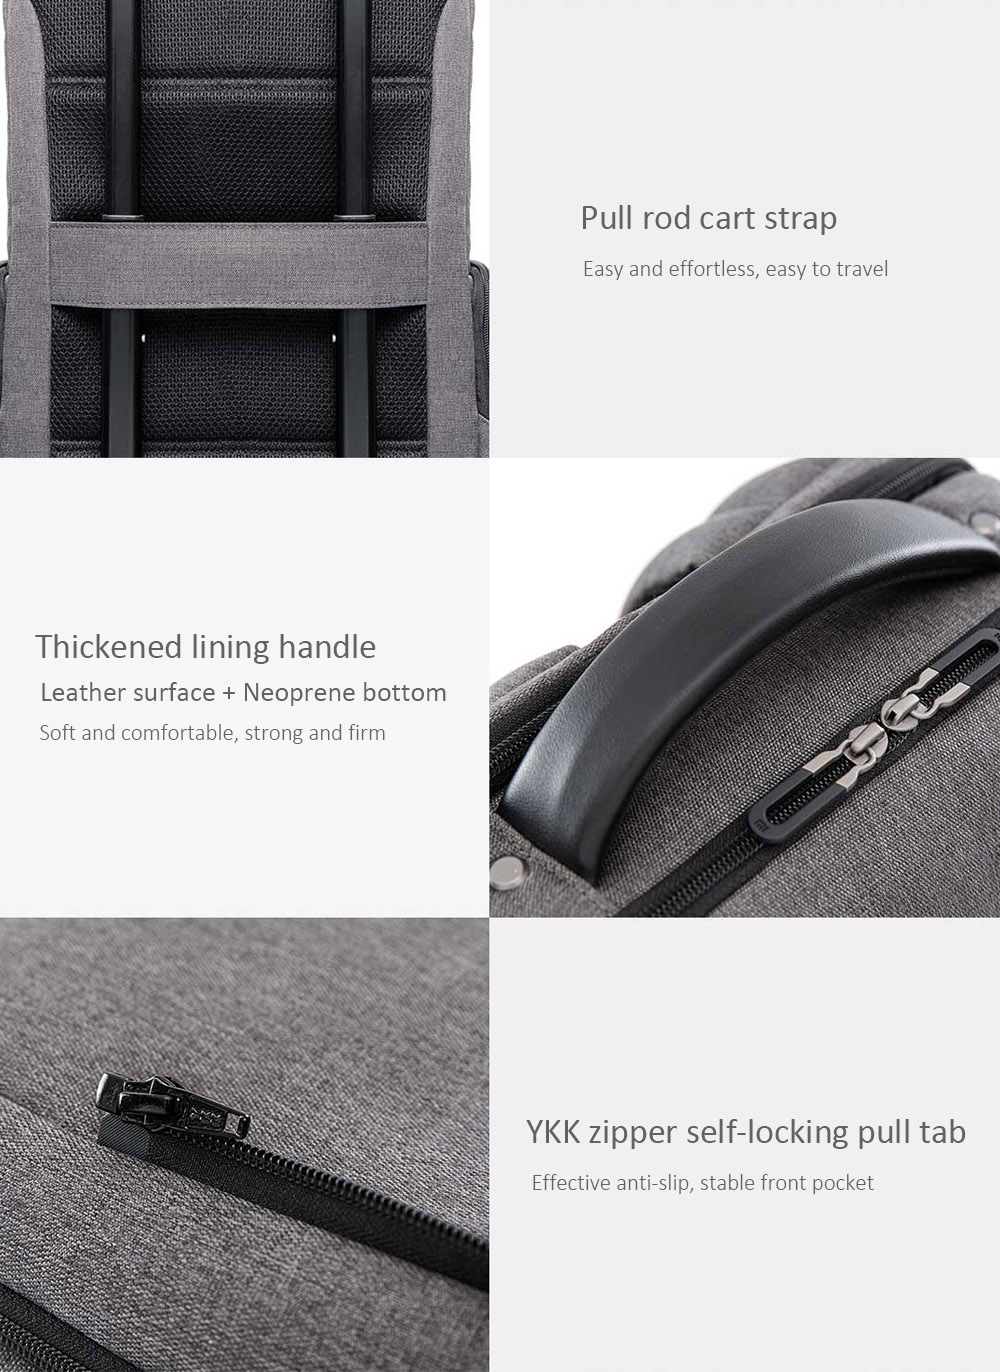 Xiaomi youpin Fashion Backpack